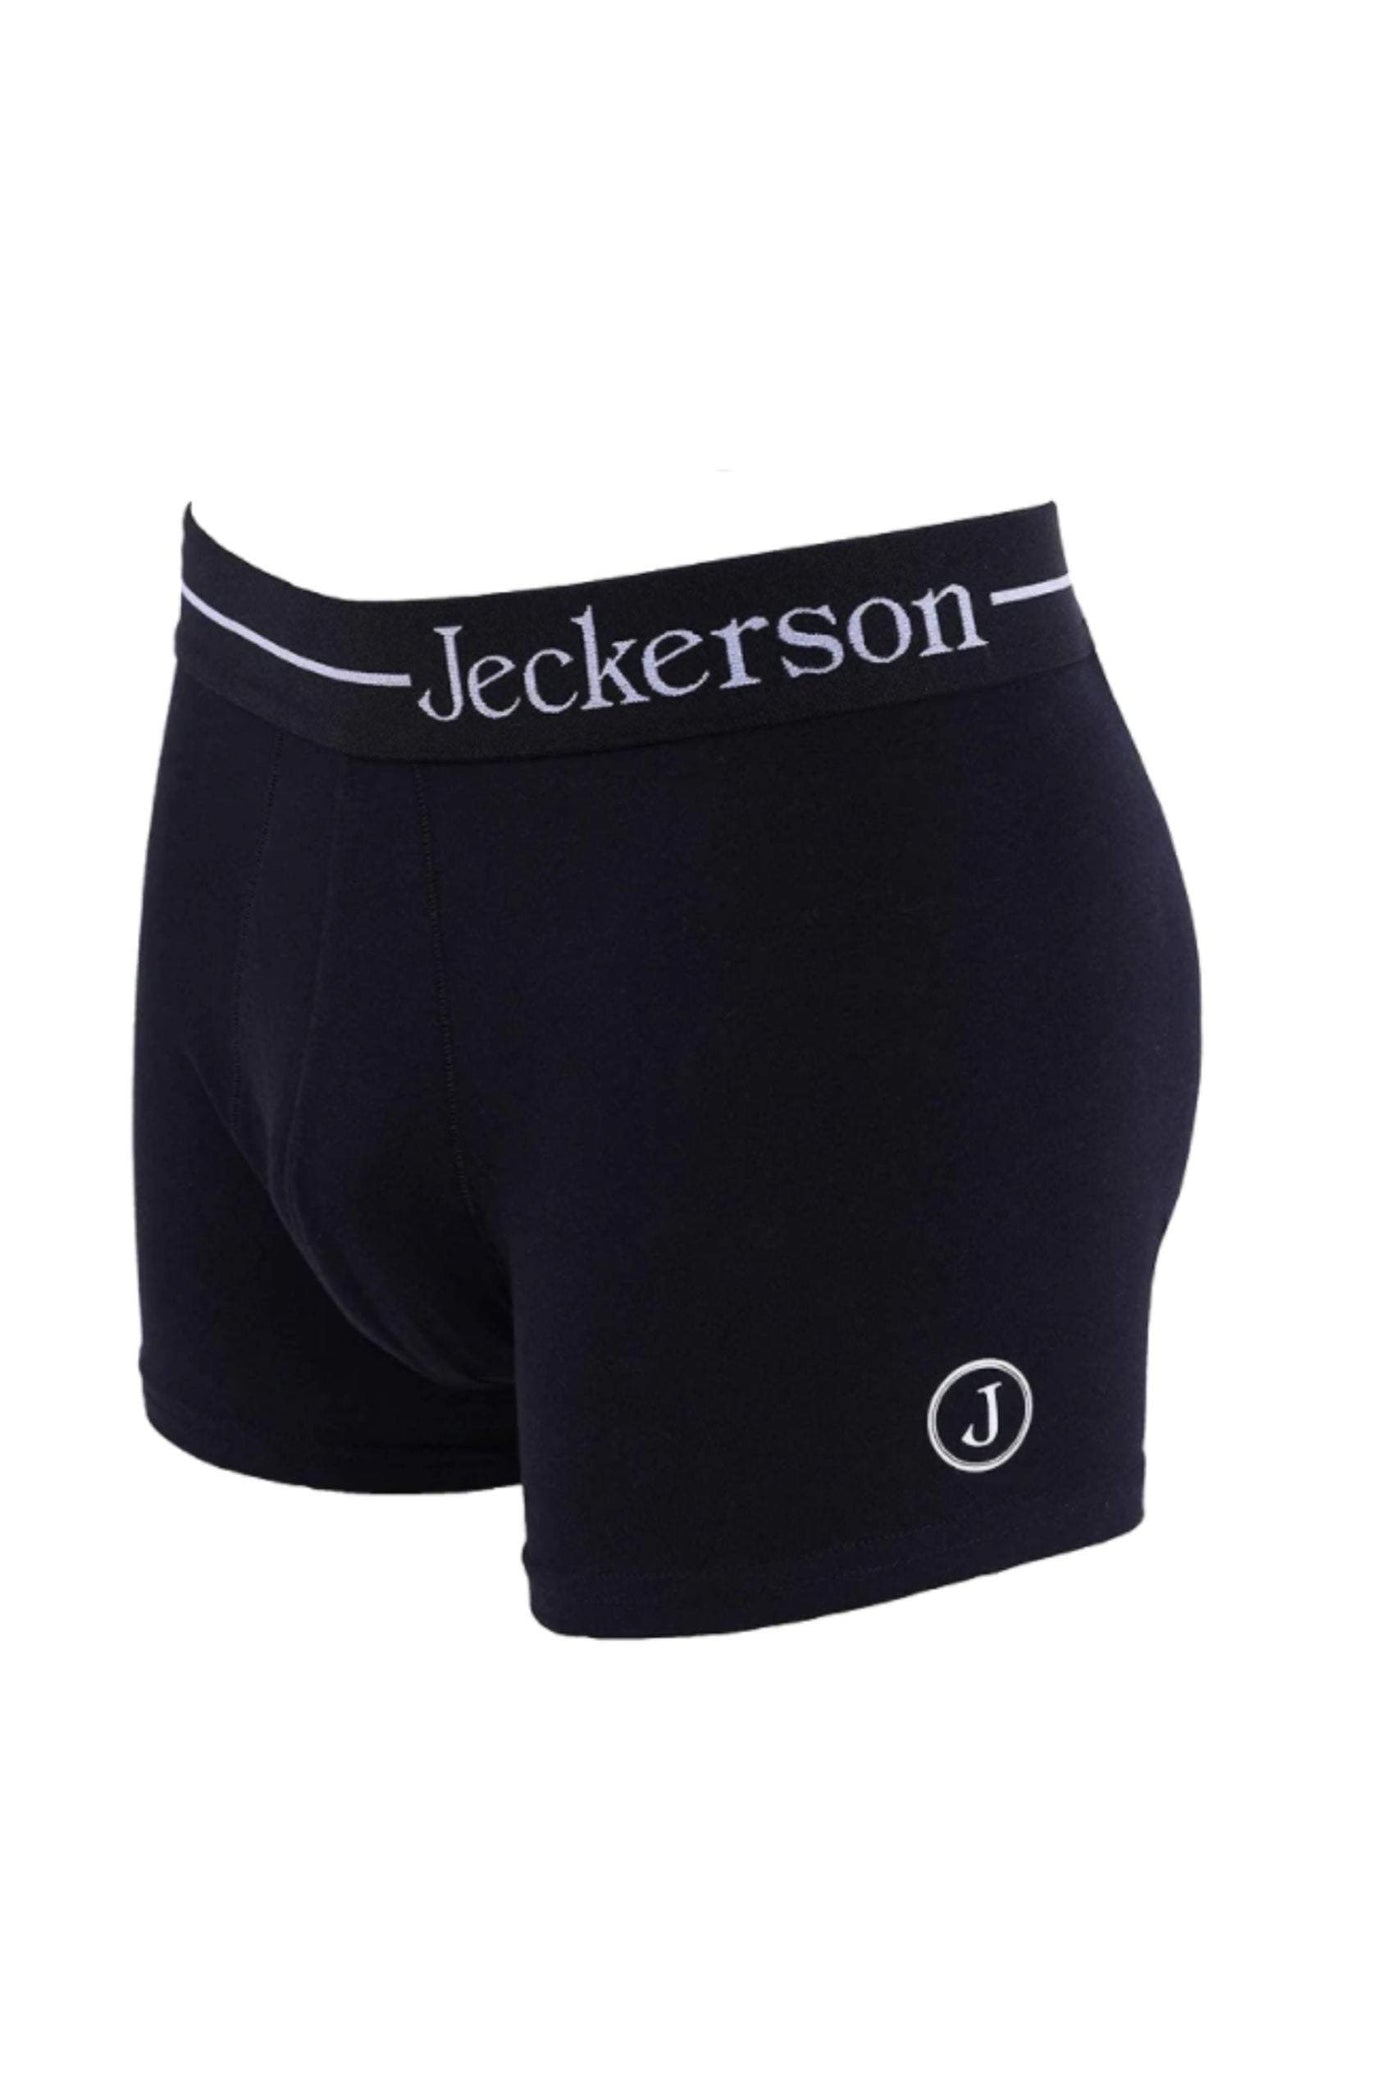 Jeckerson Black Cotton Underwear #men, Black, feed-1, Jeckerson, L, M, Underwear - Men - Clothing, XL, XXL at SEYMAYKA